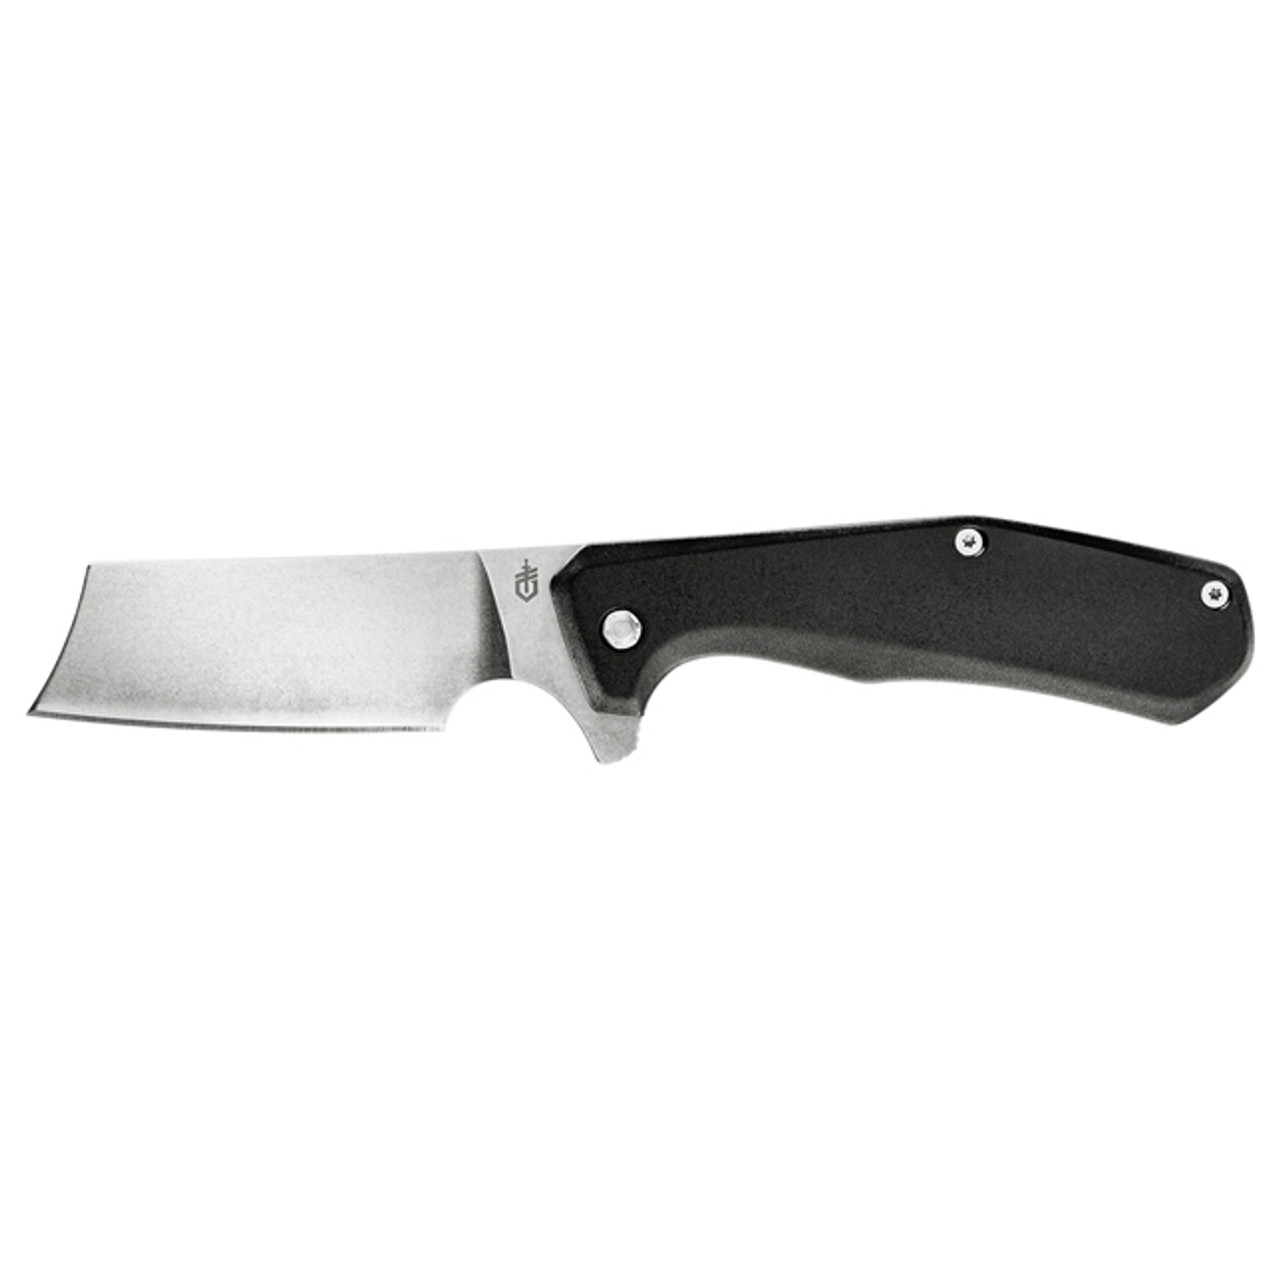 gerber pocket knife